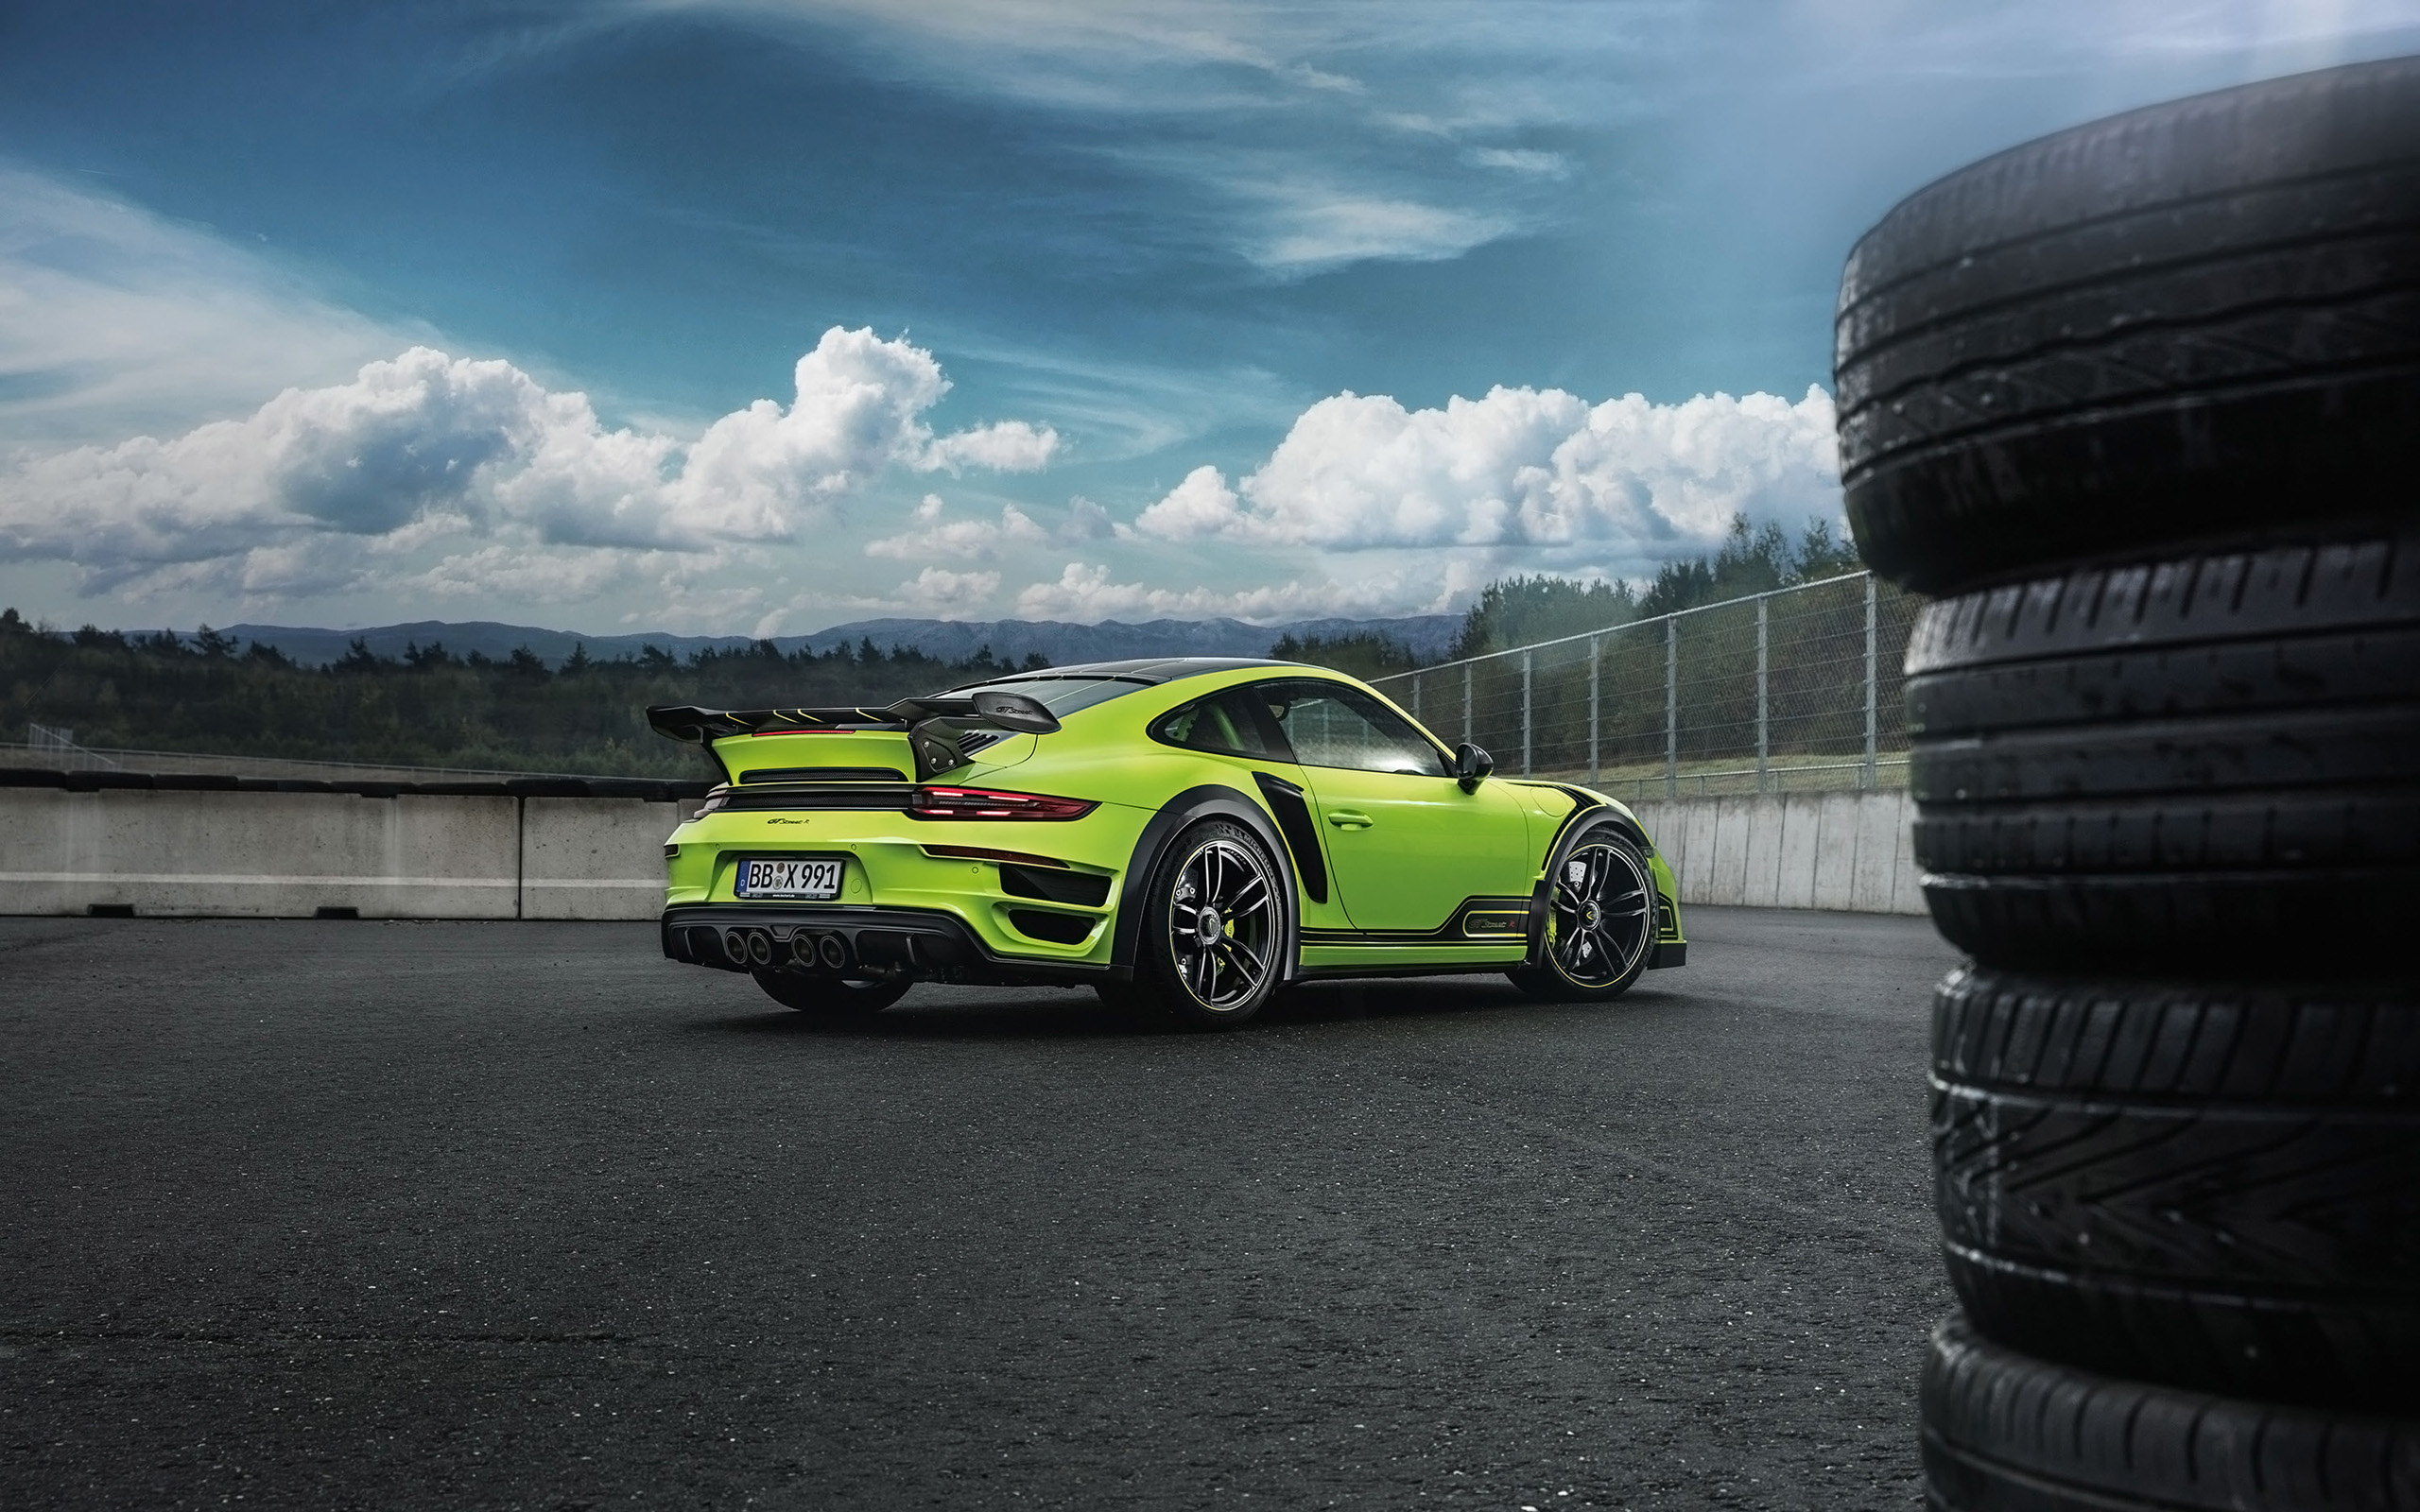 Télécharger des fonds d'écran Porsche 911 Turbo S Gtstreet R HD